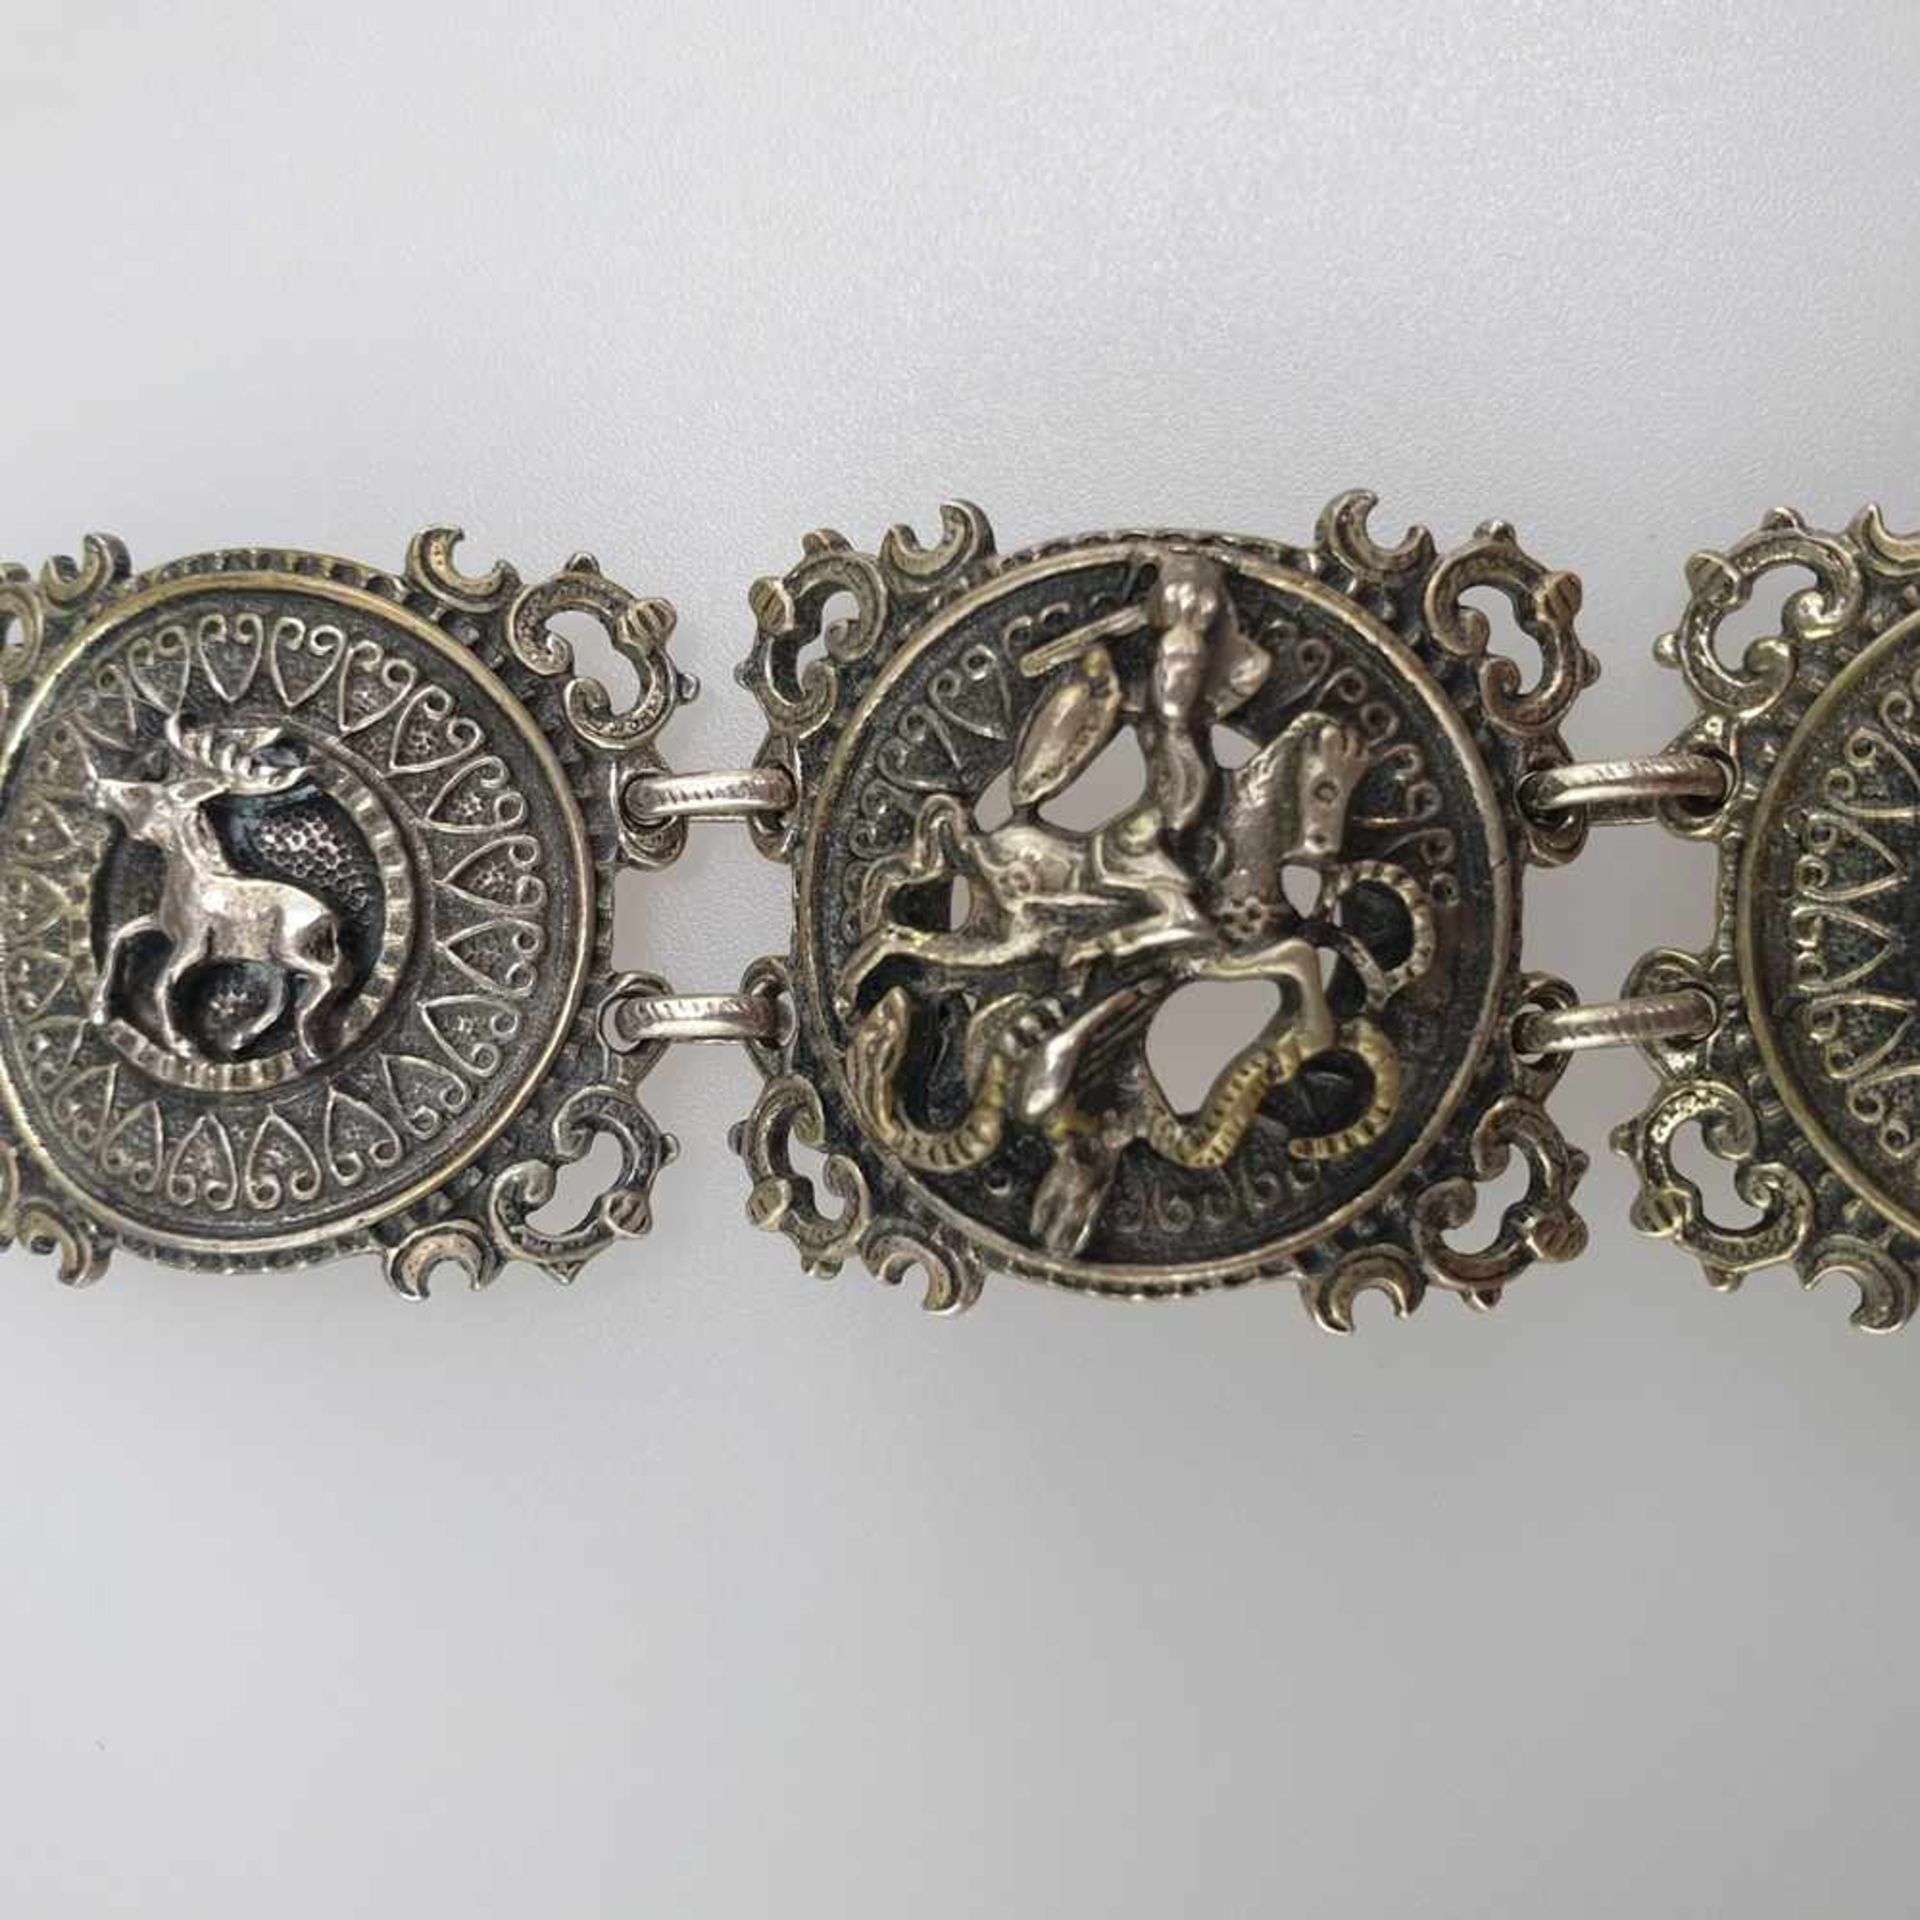 Jagdarmband - Silber, '925' gestempelt, 5 filigran gearbeitete Glieder mit applizierten - Bild 3 aus 5